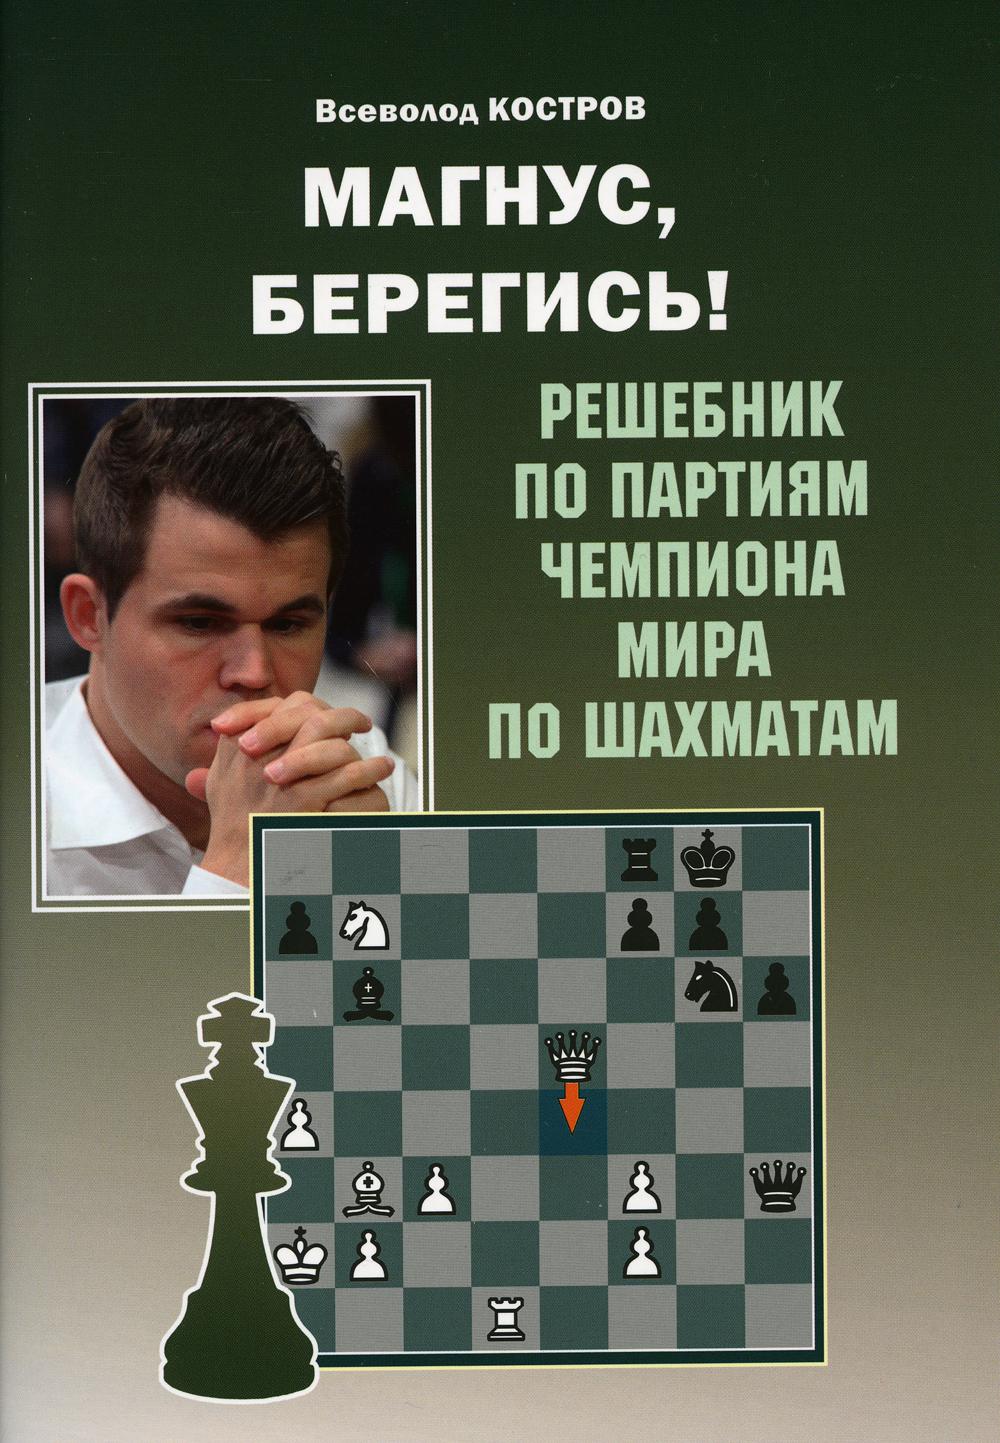 фото Книга магнус, берегись! russian chess house